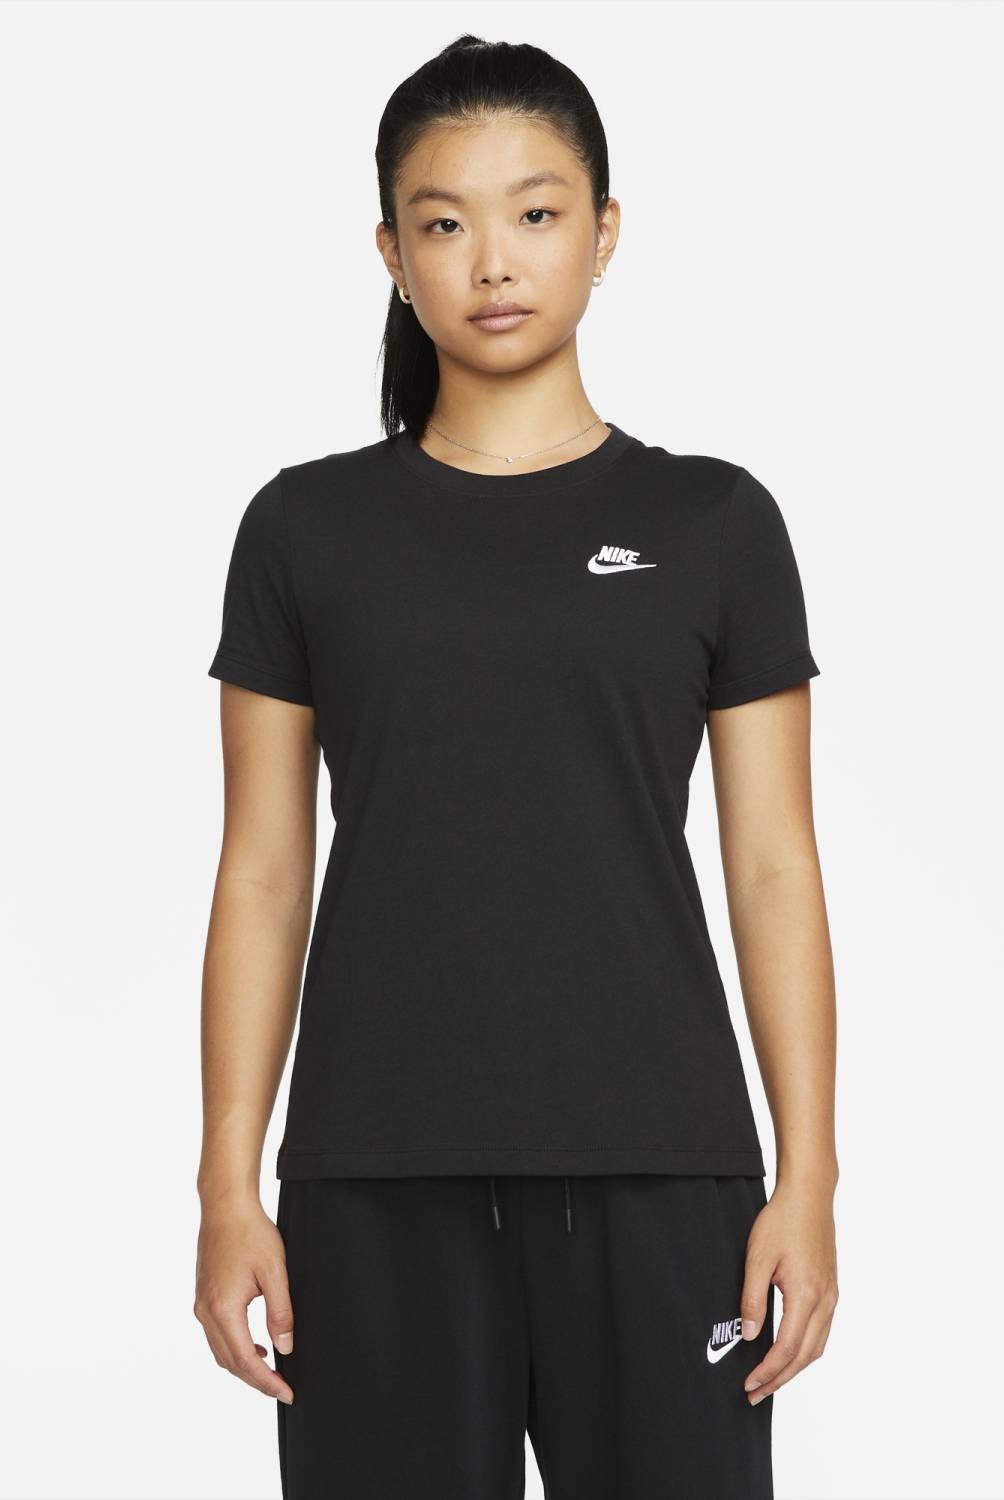 NIKE - Sports t-shirts mujer